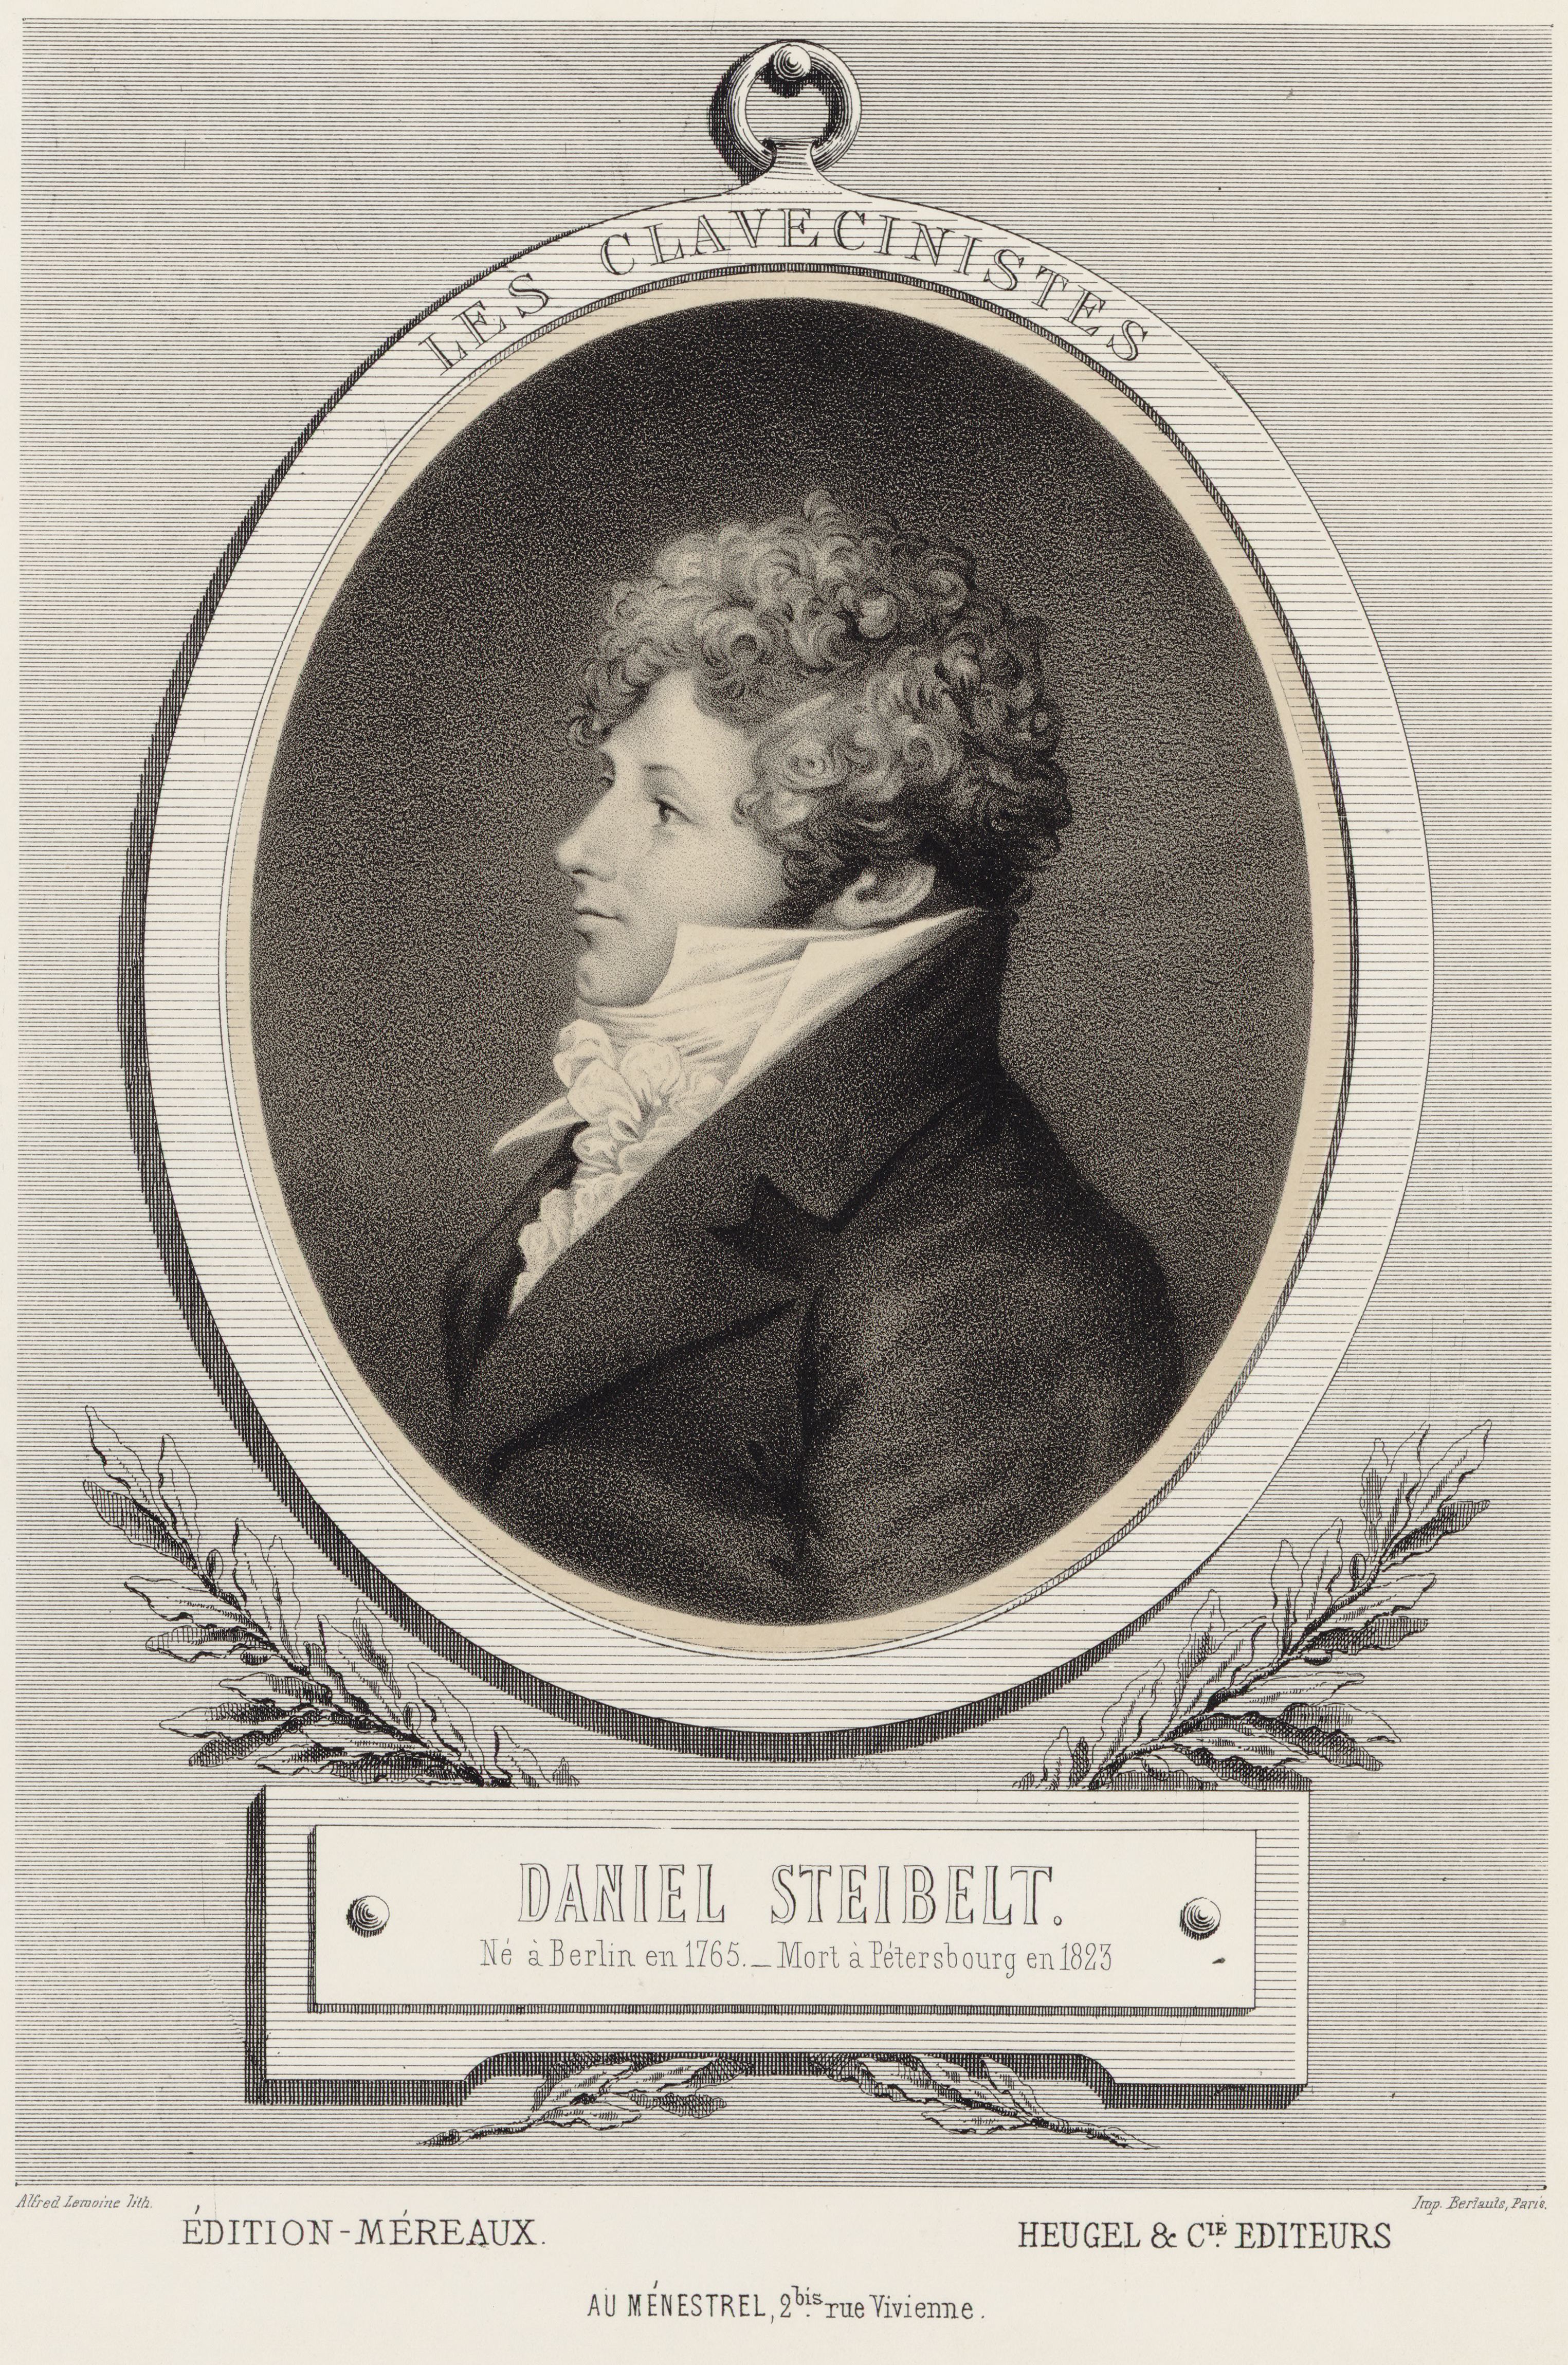 Daniel Steibelt